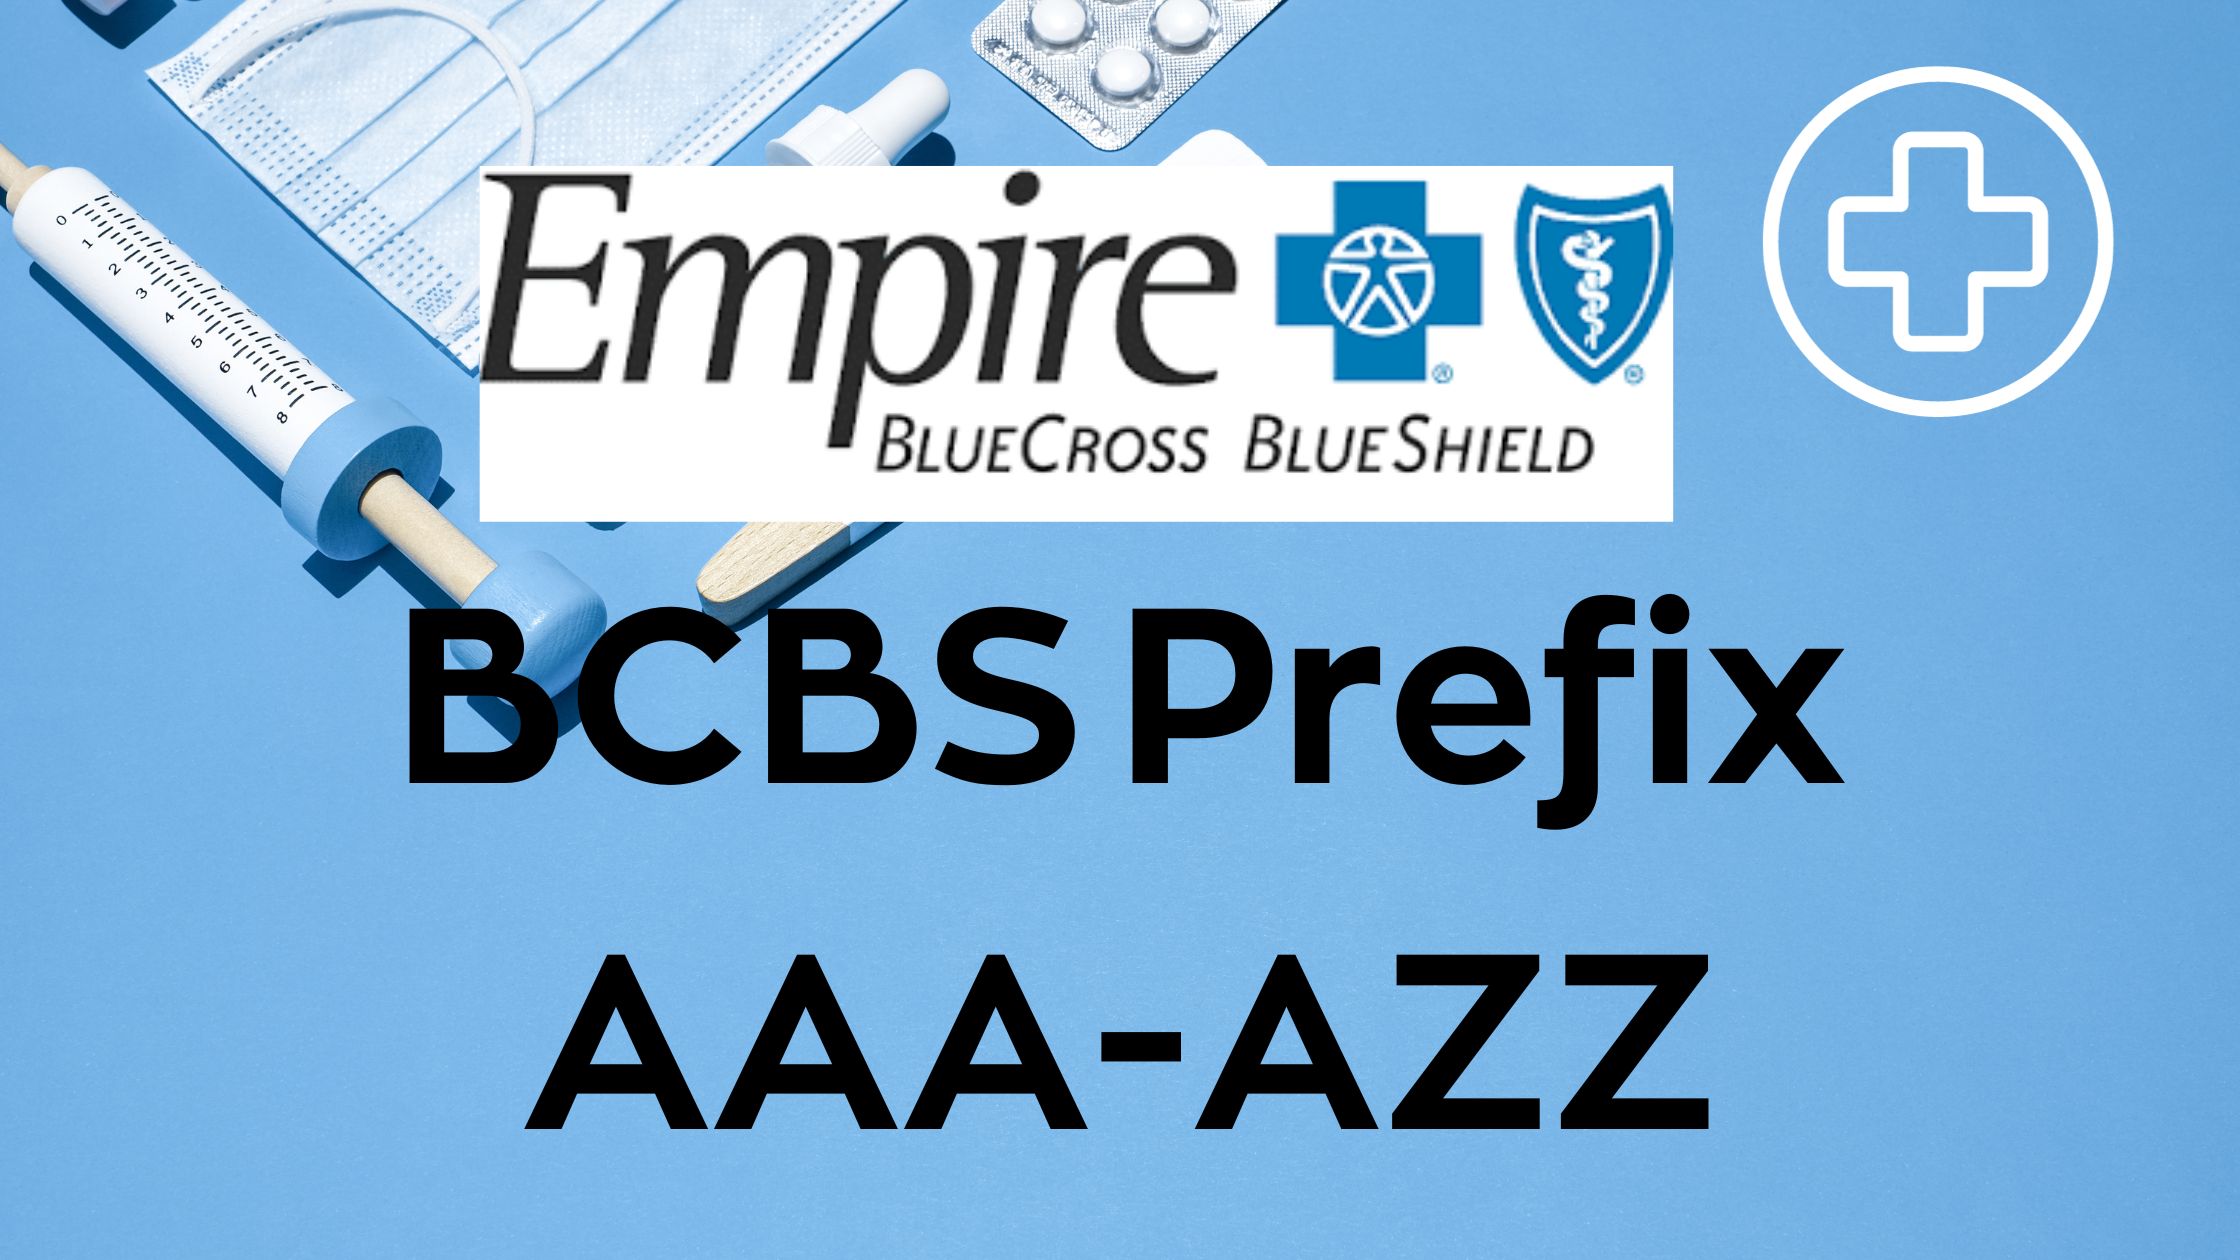 BCBS prefix AAA